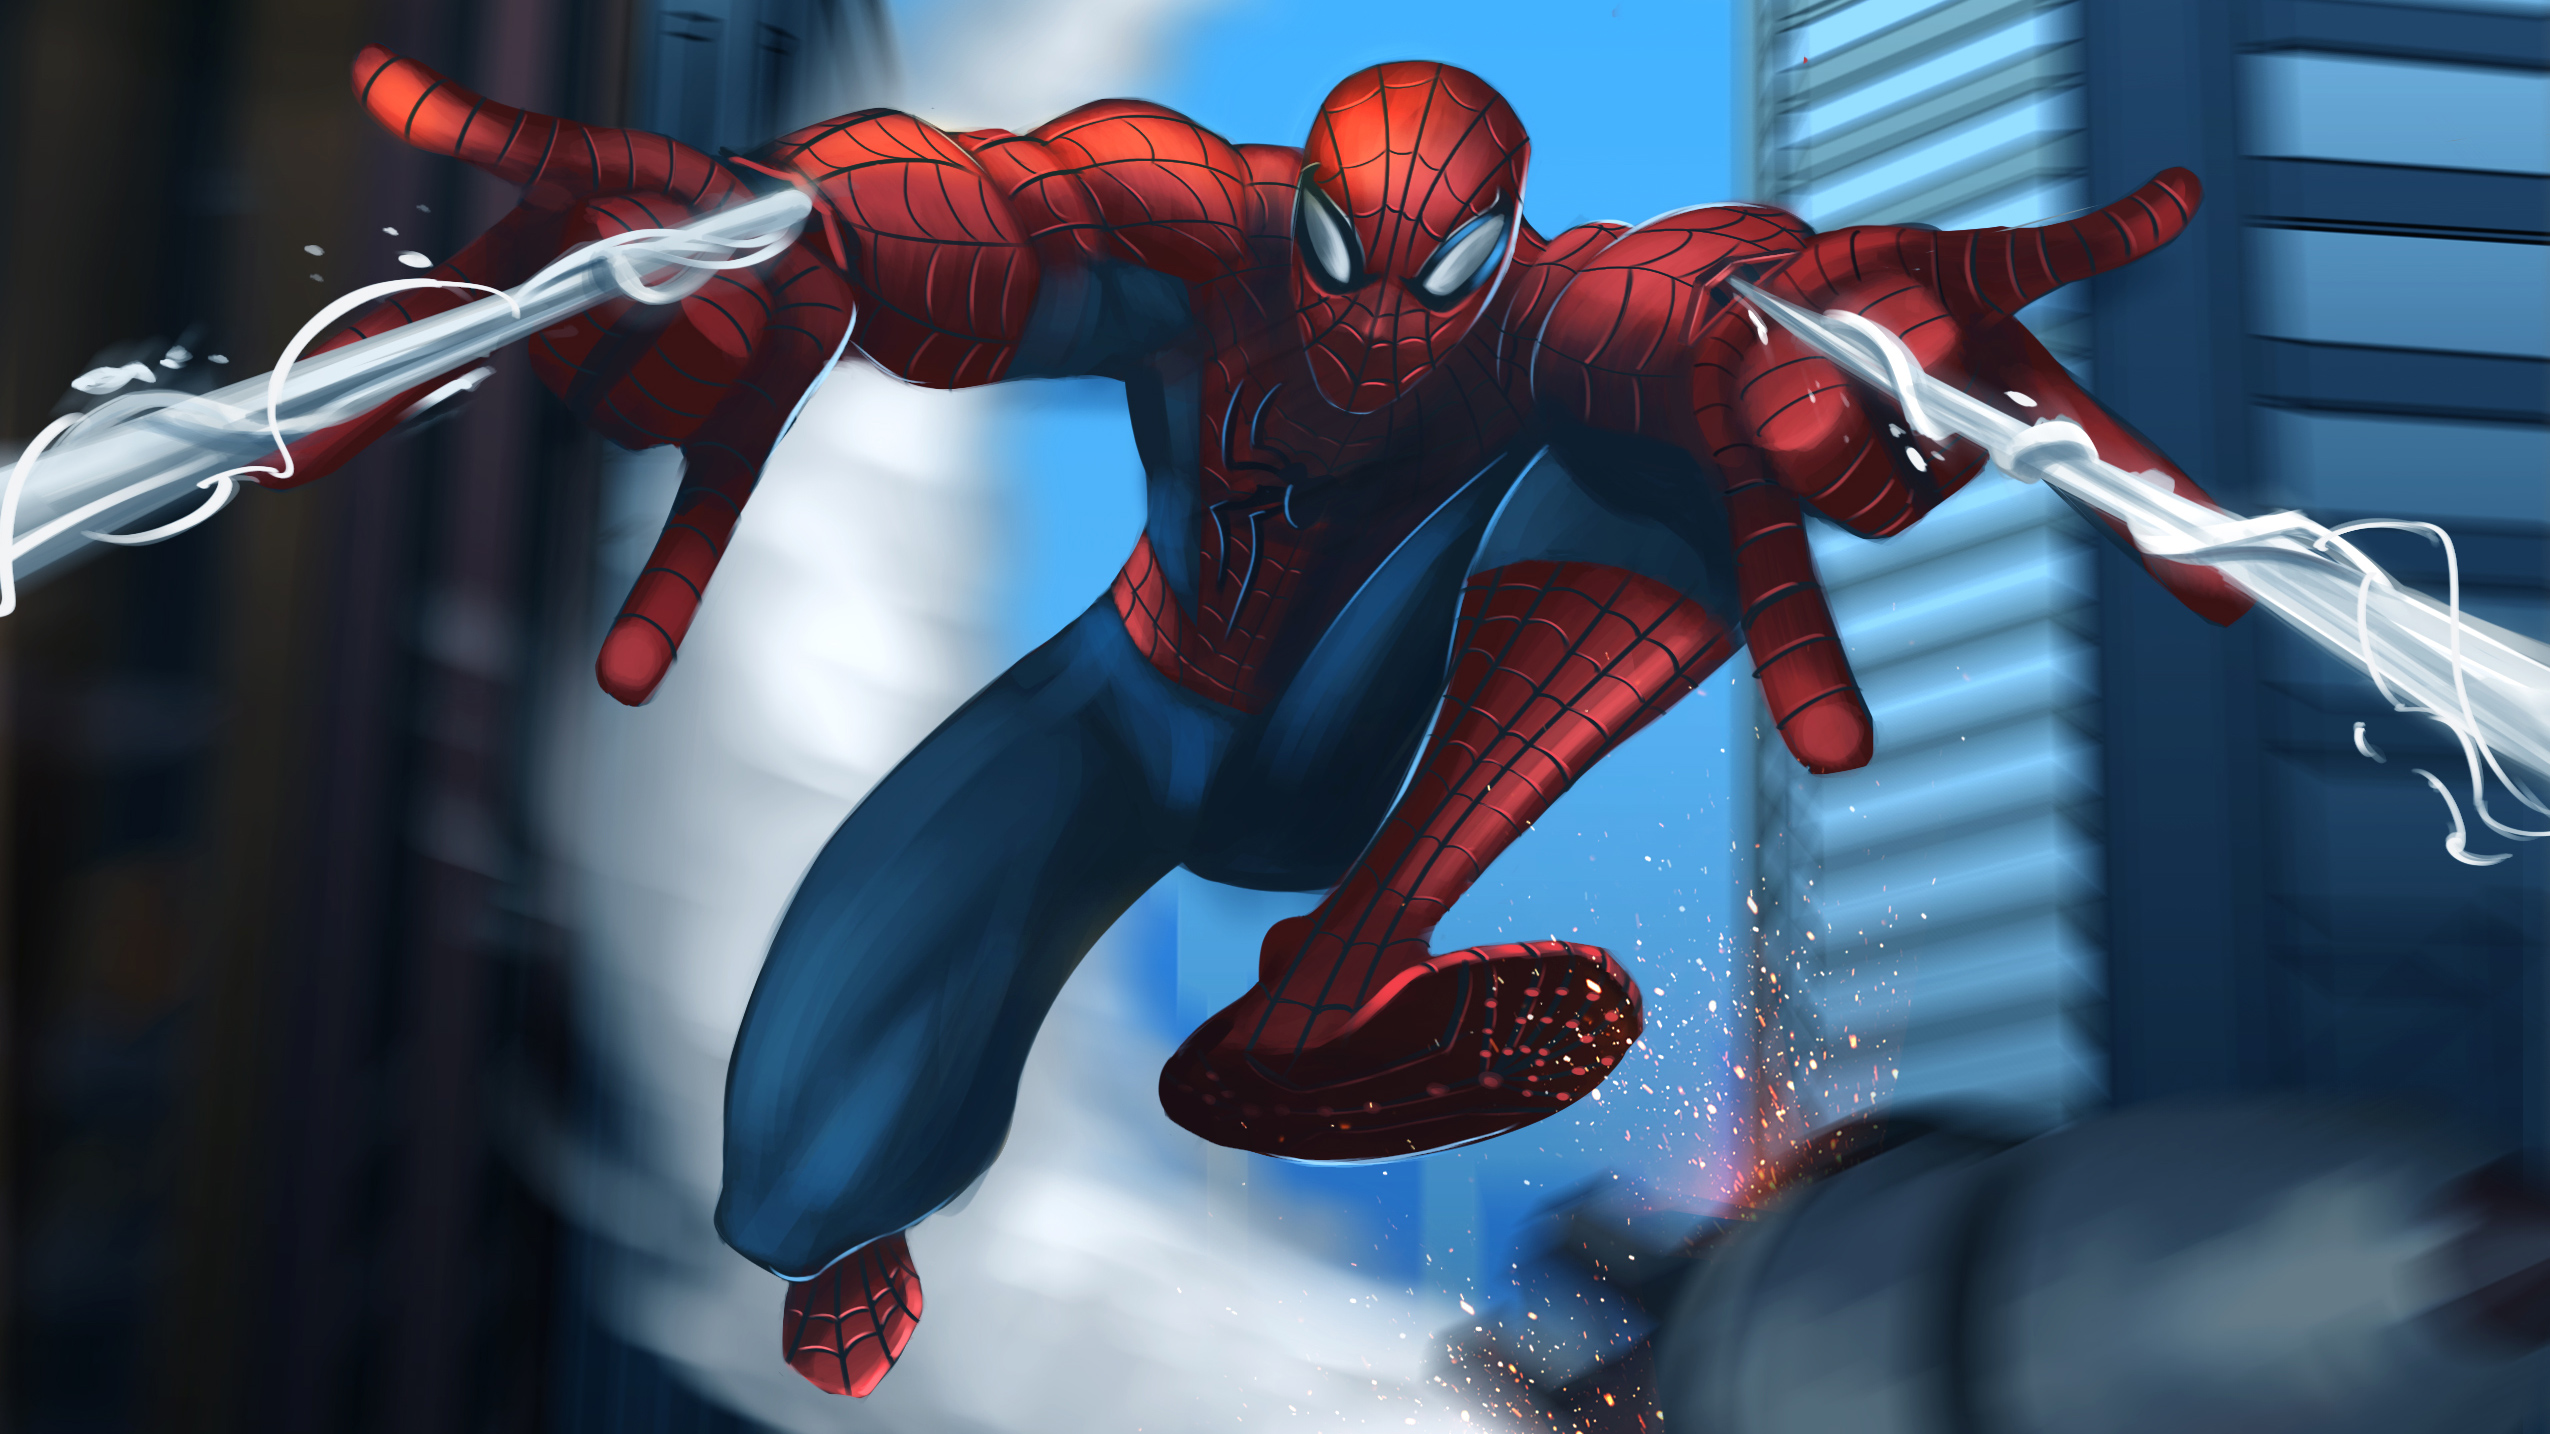 spiderman shooting web at screen